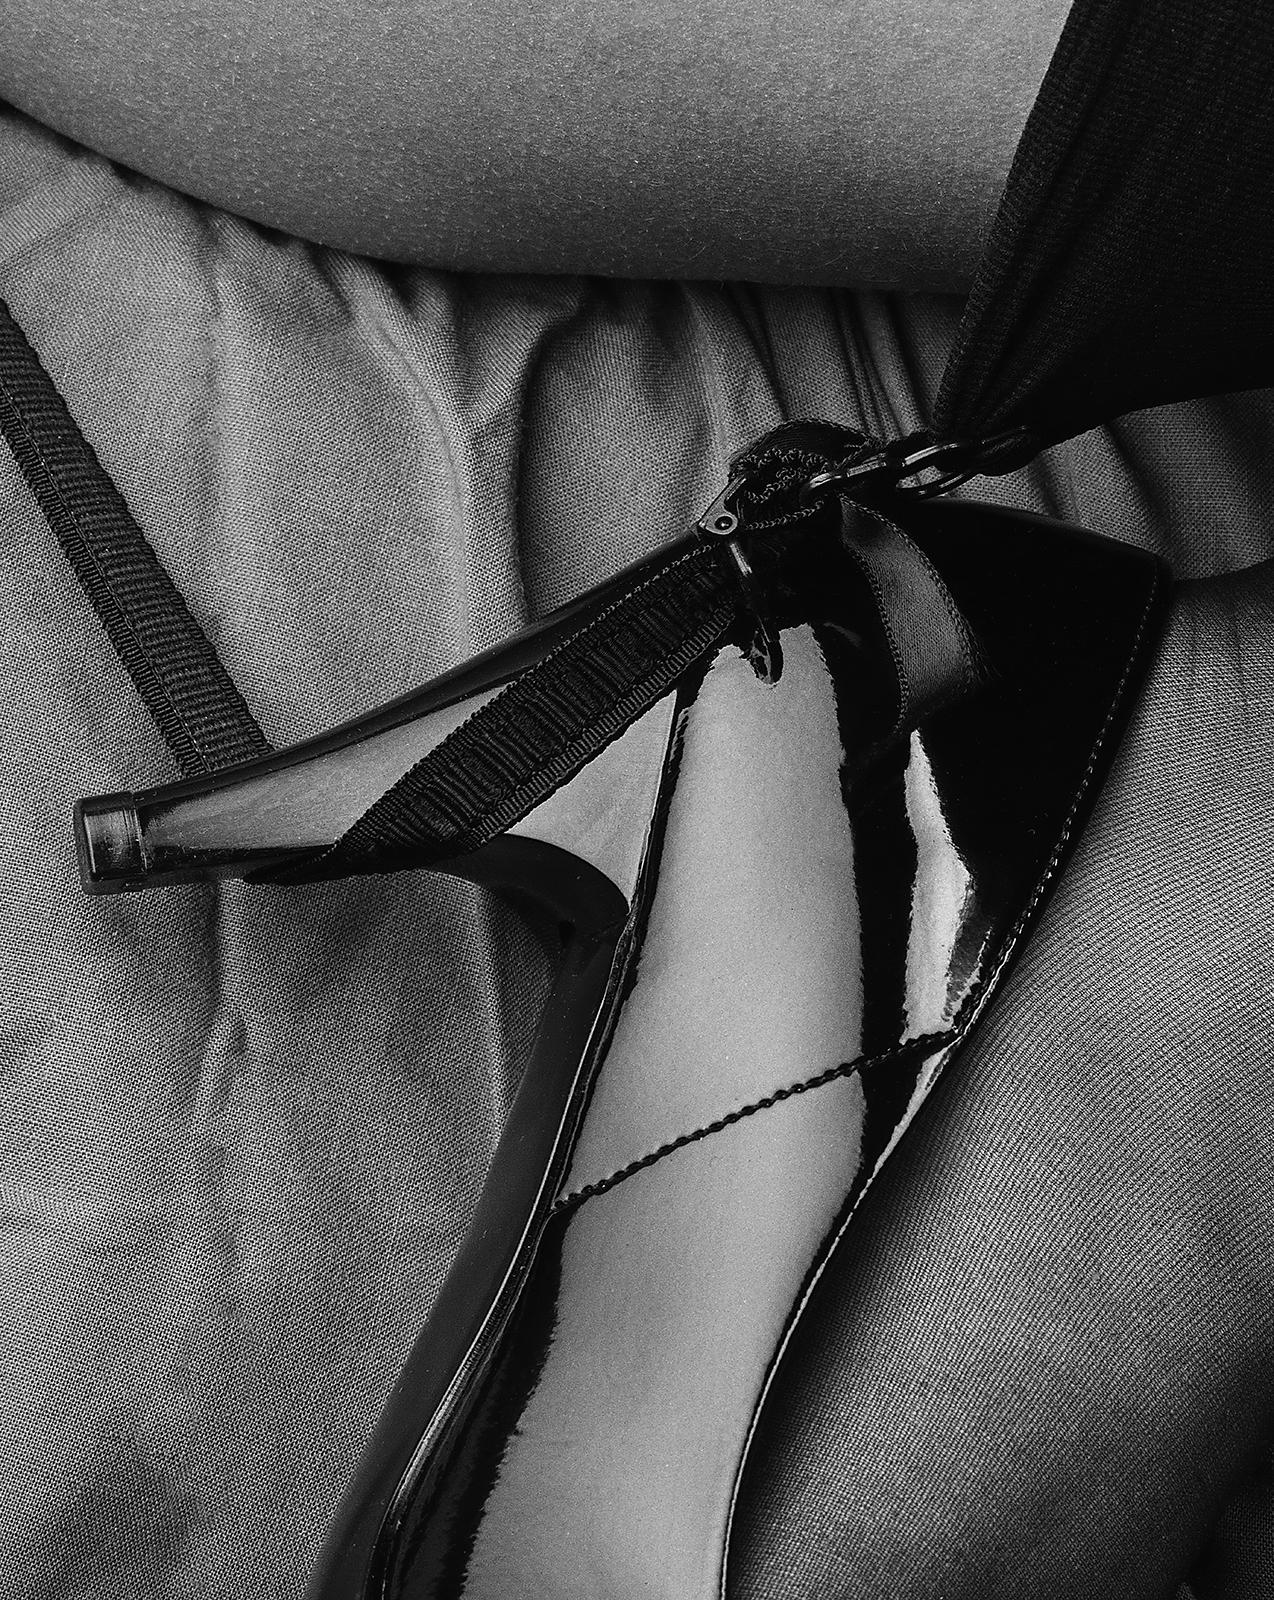 Rachael - Signierte limitierte Auflage, Unterwäsche, Frau, High Heels, Hosenträger – Photograph von Ian Sanderson